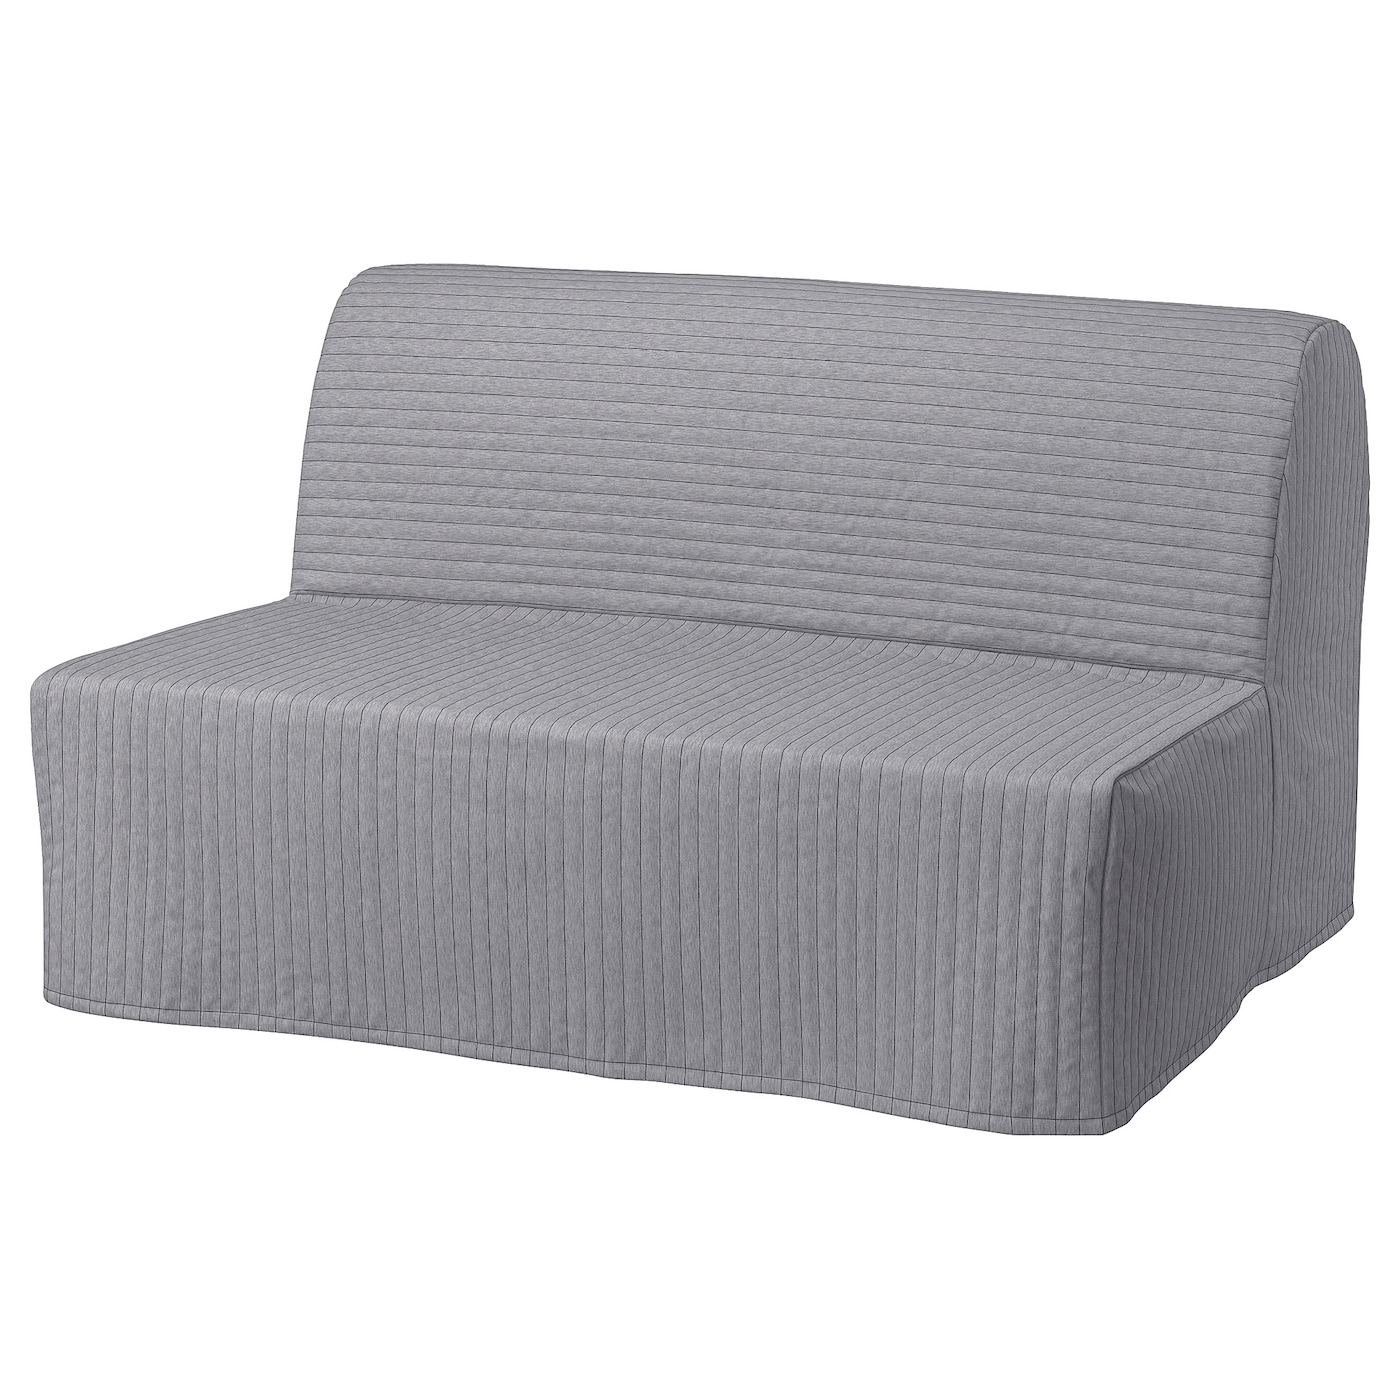 диван кровать шарм дизайн бит 2 серый кровать ЛИКСЕЛЕ МУРБО 2 раскладных дивана-кровати, Книса светло-серый LYCKSELE MURBO IKEA